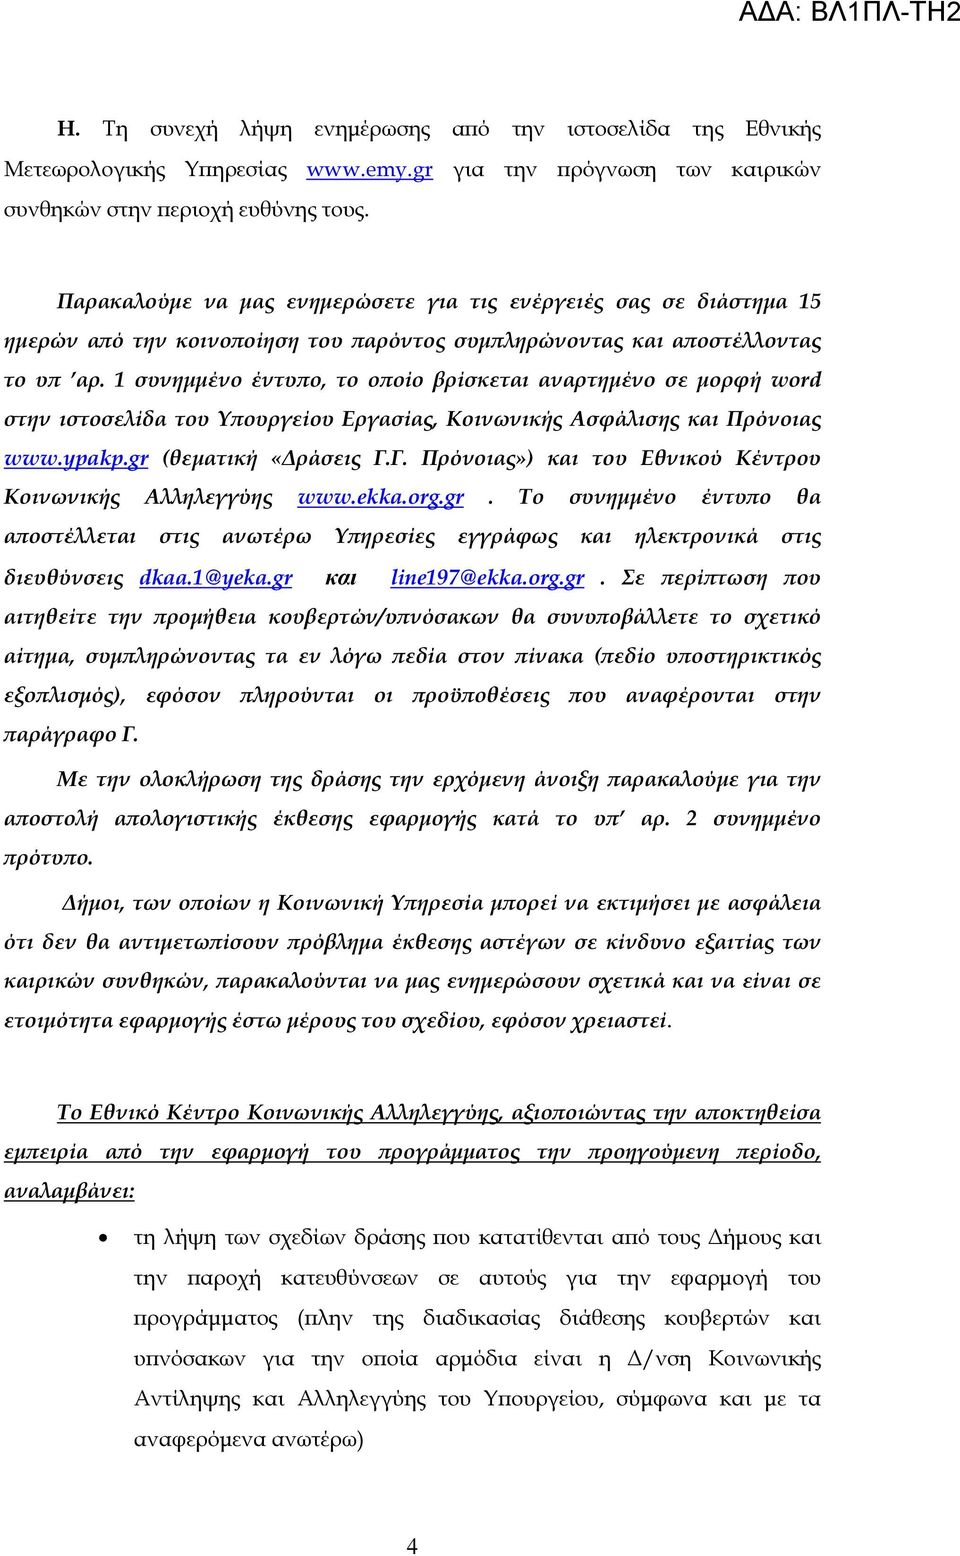 1 συνηµµένο έντυ ο, το ο οίο βρίσκεται αναρτηµένο σε µορφή word στην ιστοσελίδα του Υ ουργείου Εργασίας, Κοινωνικής Ασφάλισης και Πρόνοιας www.ypakp.gr (θεµατική «ράσεις Γ.